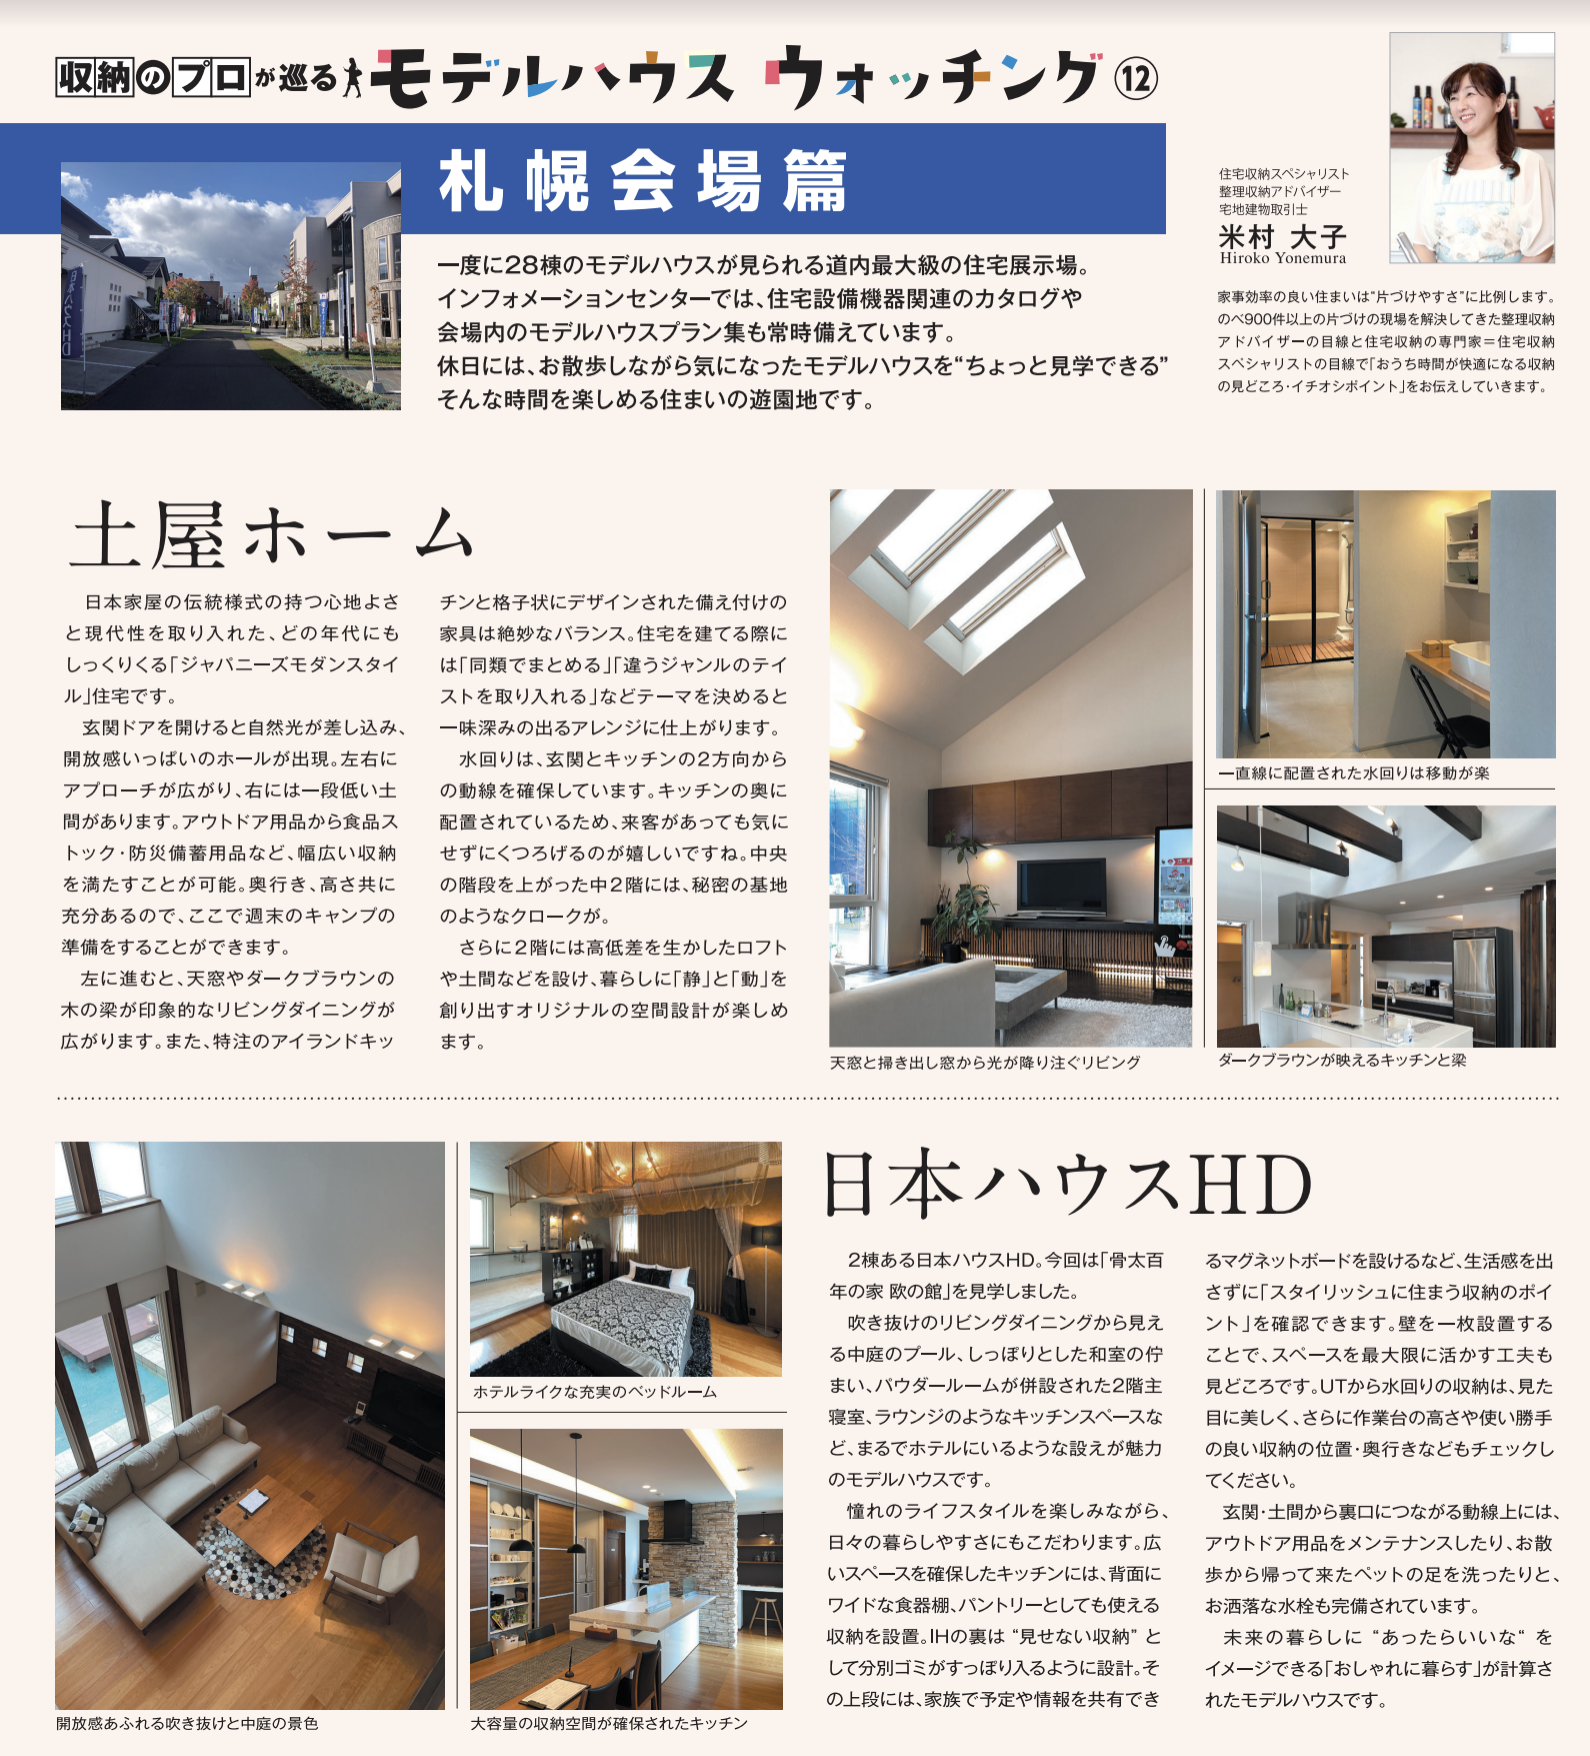 ハウスメーカー各社のモデルハウスが立ち並ぶ総合住宅展示場北海道マイホームセンターの札幌会場の土屋ホームと日本ハウスHDのご紹介です